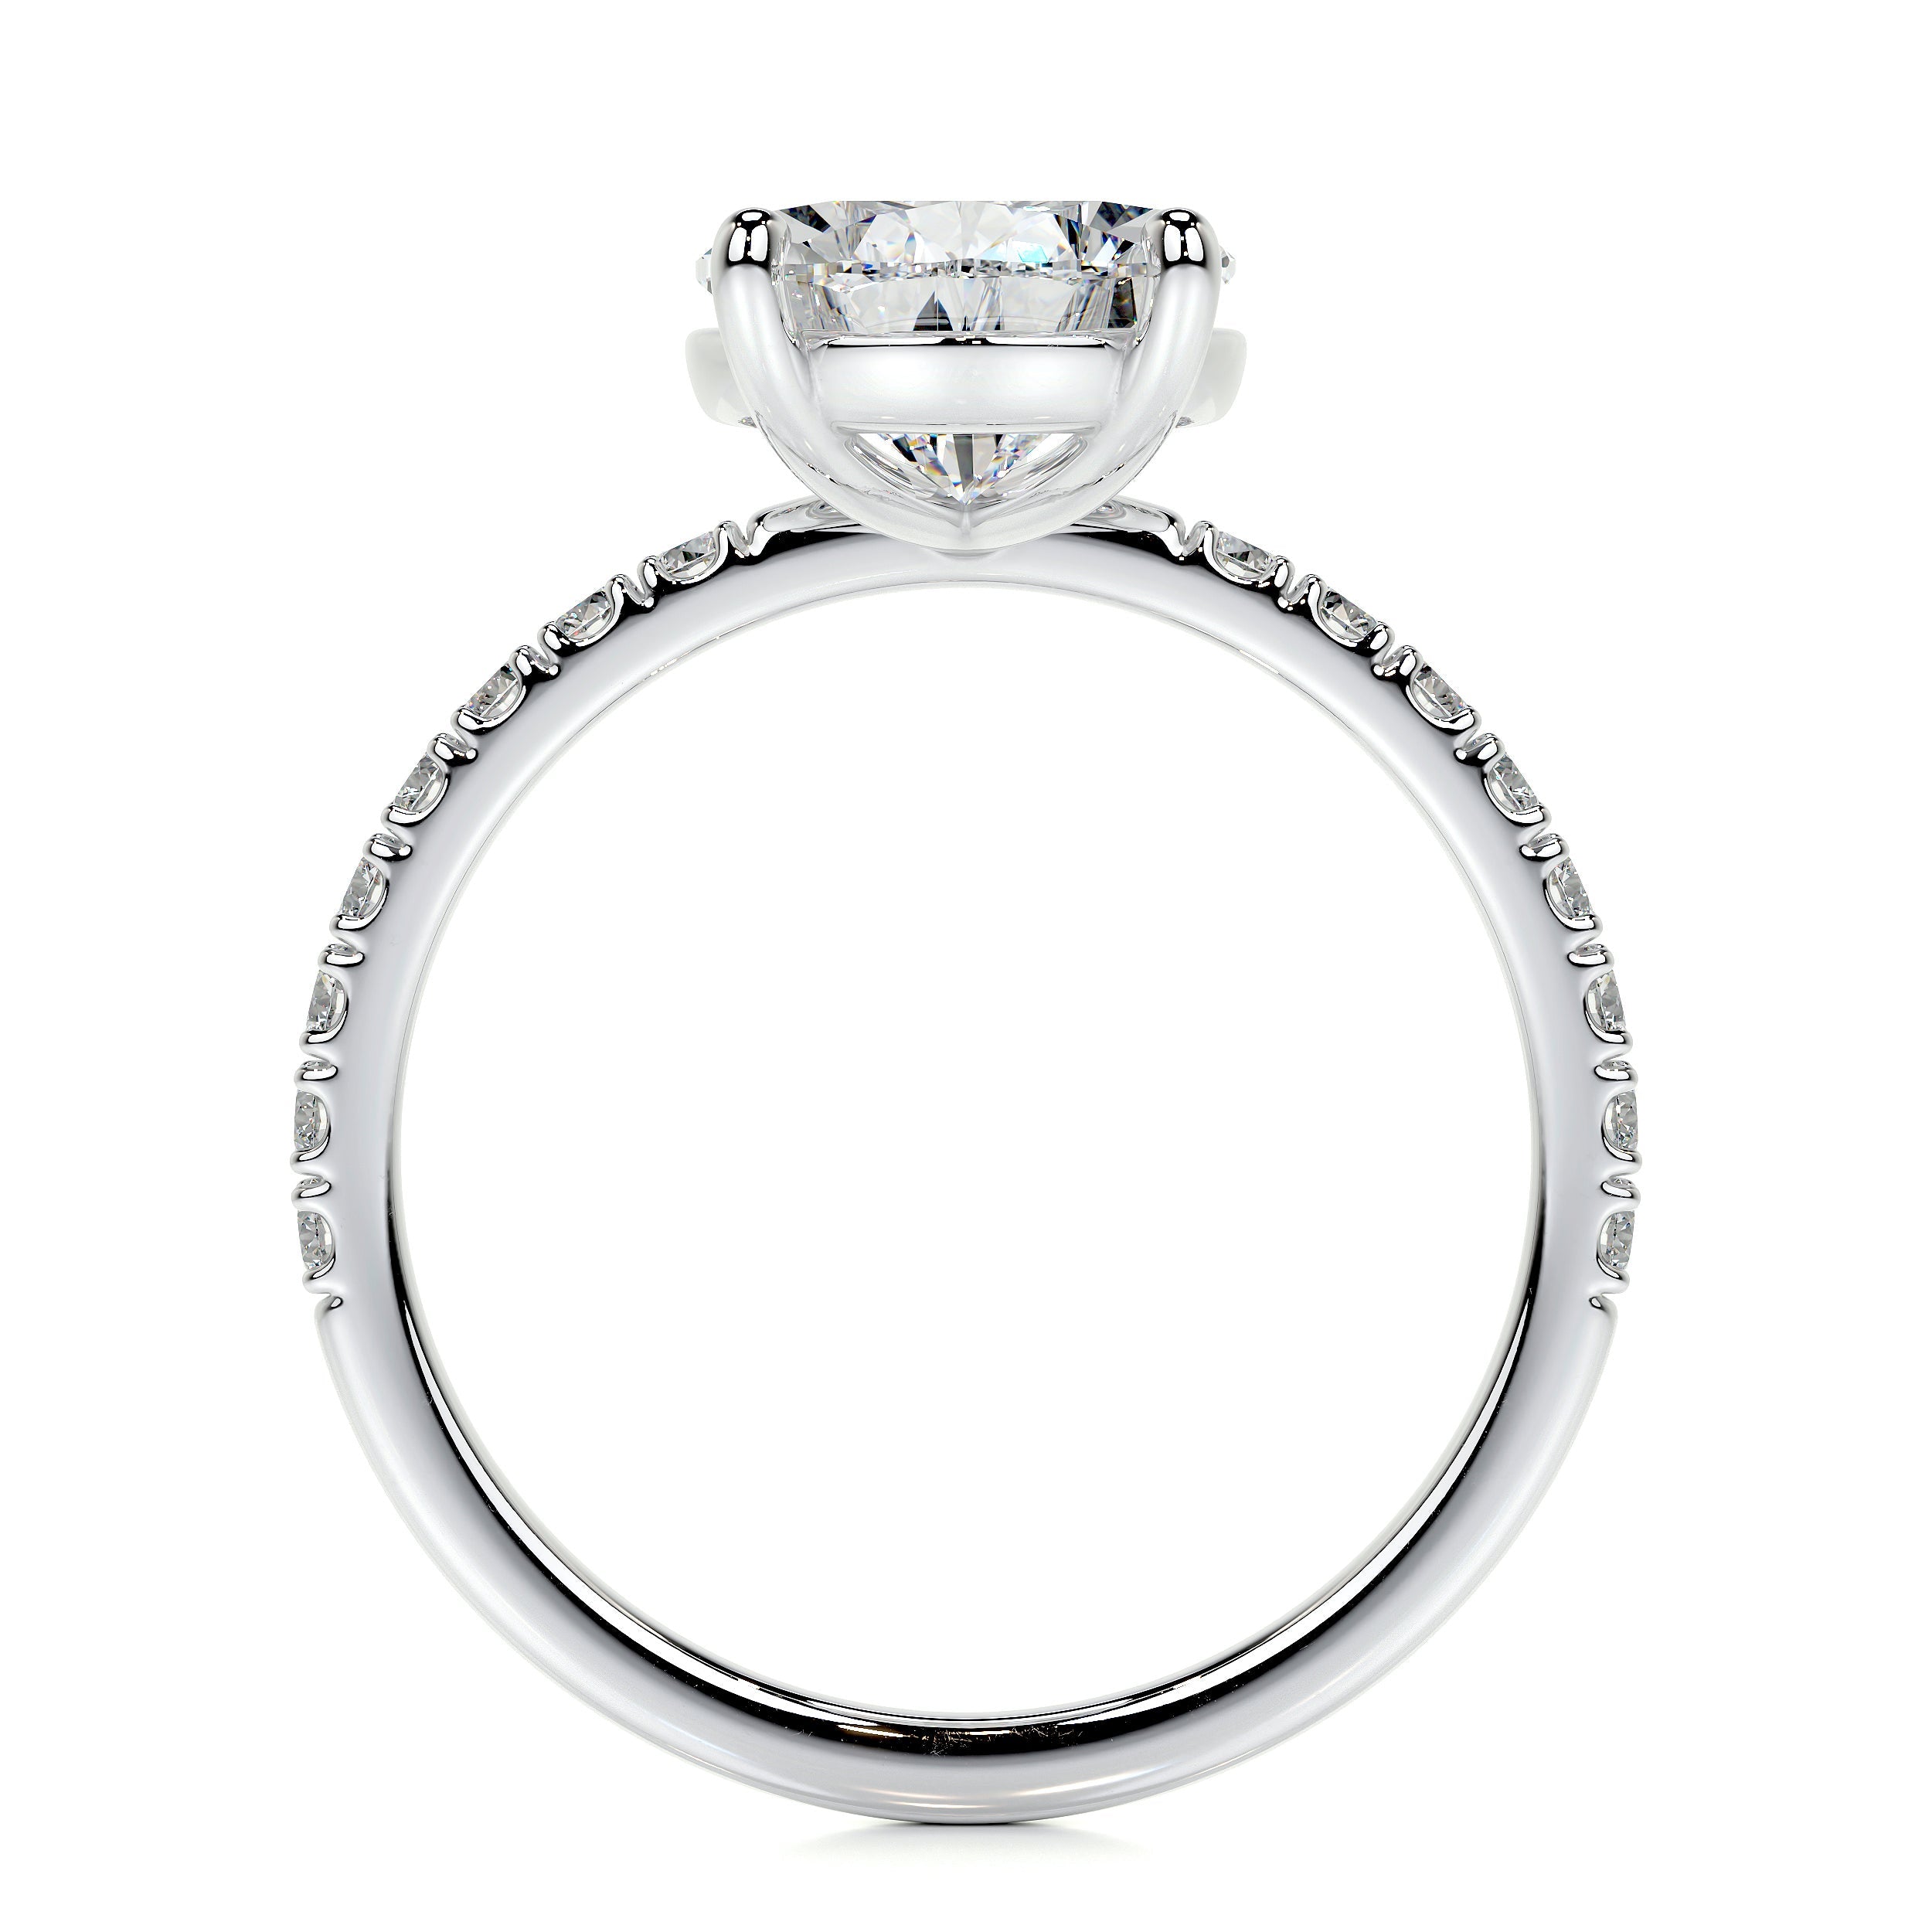 Jenny Lab Grown Diamond Ring   (5.5 Carat) -14K White Gold